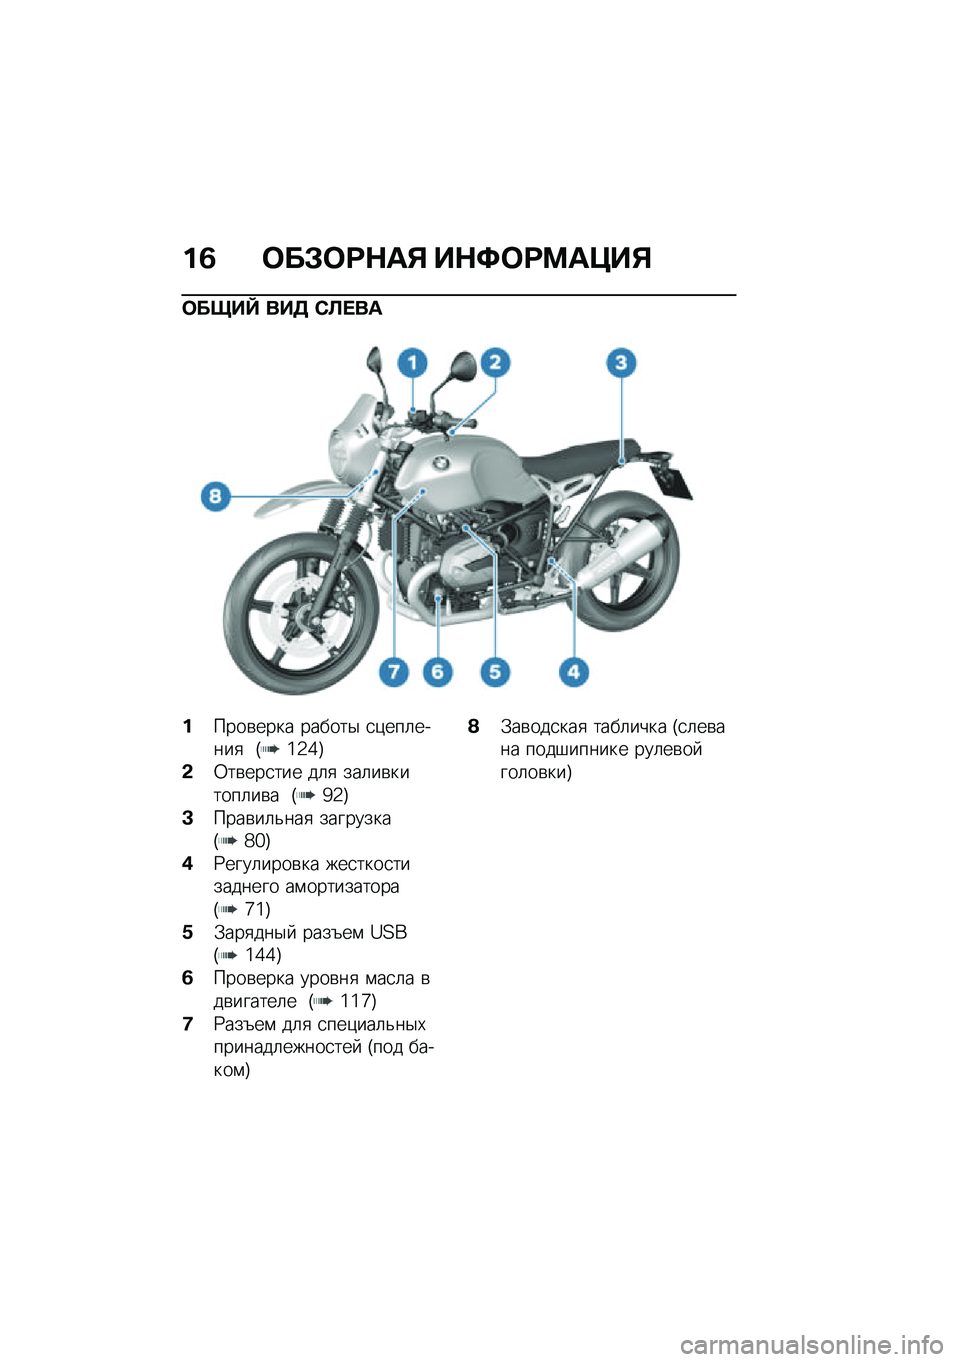 BMW MOTORRAD R NINE T URVAN G/S 2020  Руководство по эксплуатации (in Russian) ��2 �	��#�	�:�$��% ��$�;�	�:�<��=��%
�	����f ���3 �)�A� ��
�����\b���� ������$ �
�)���	�����
 �G�\�2�]�H
�&�0��\b���
��� ��	�
 ���	��\b������	��\b� �G�